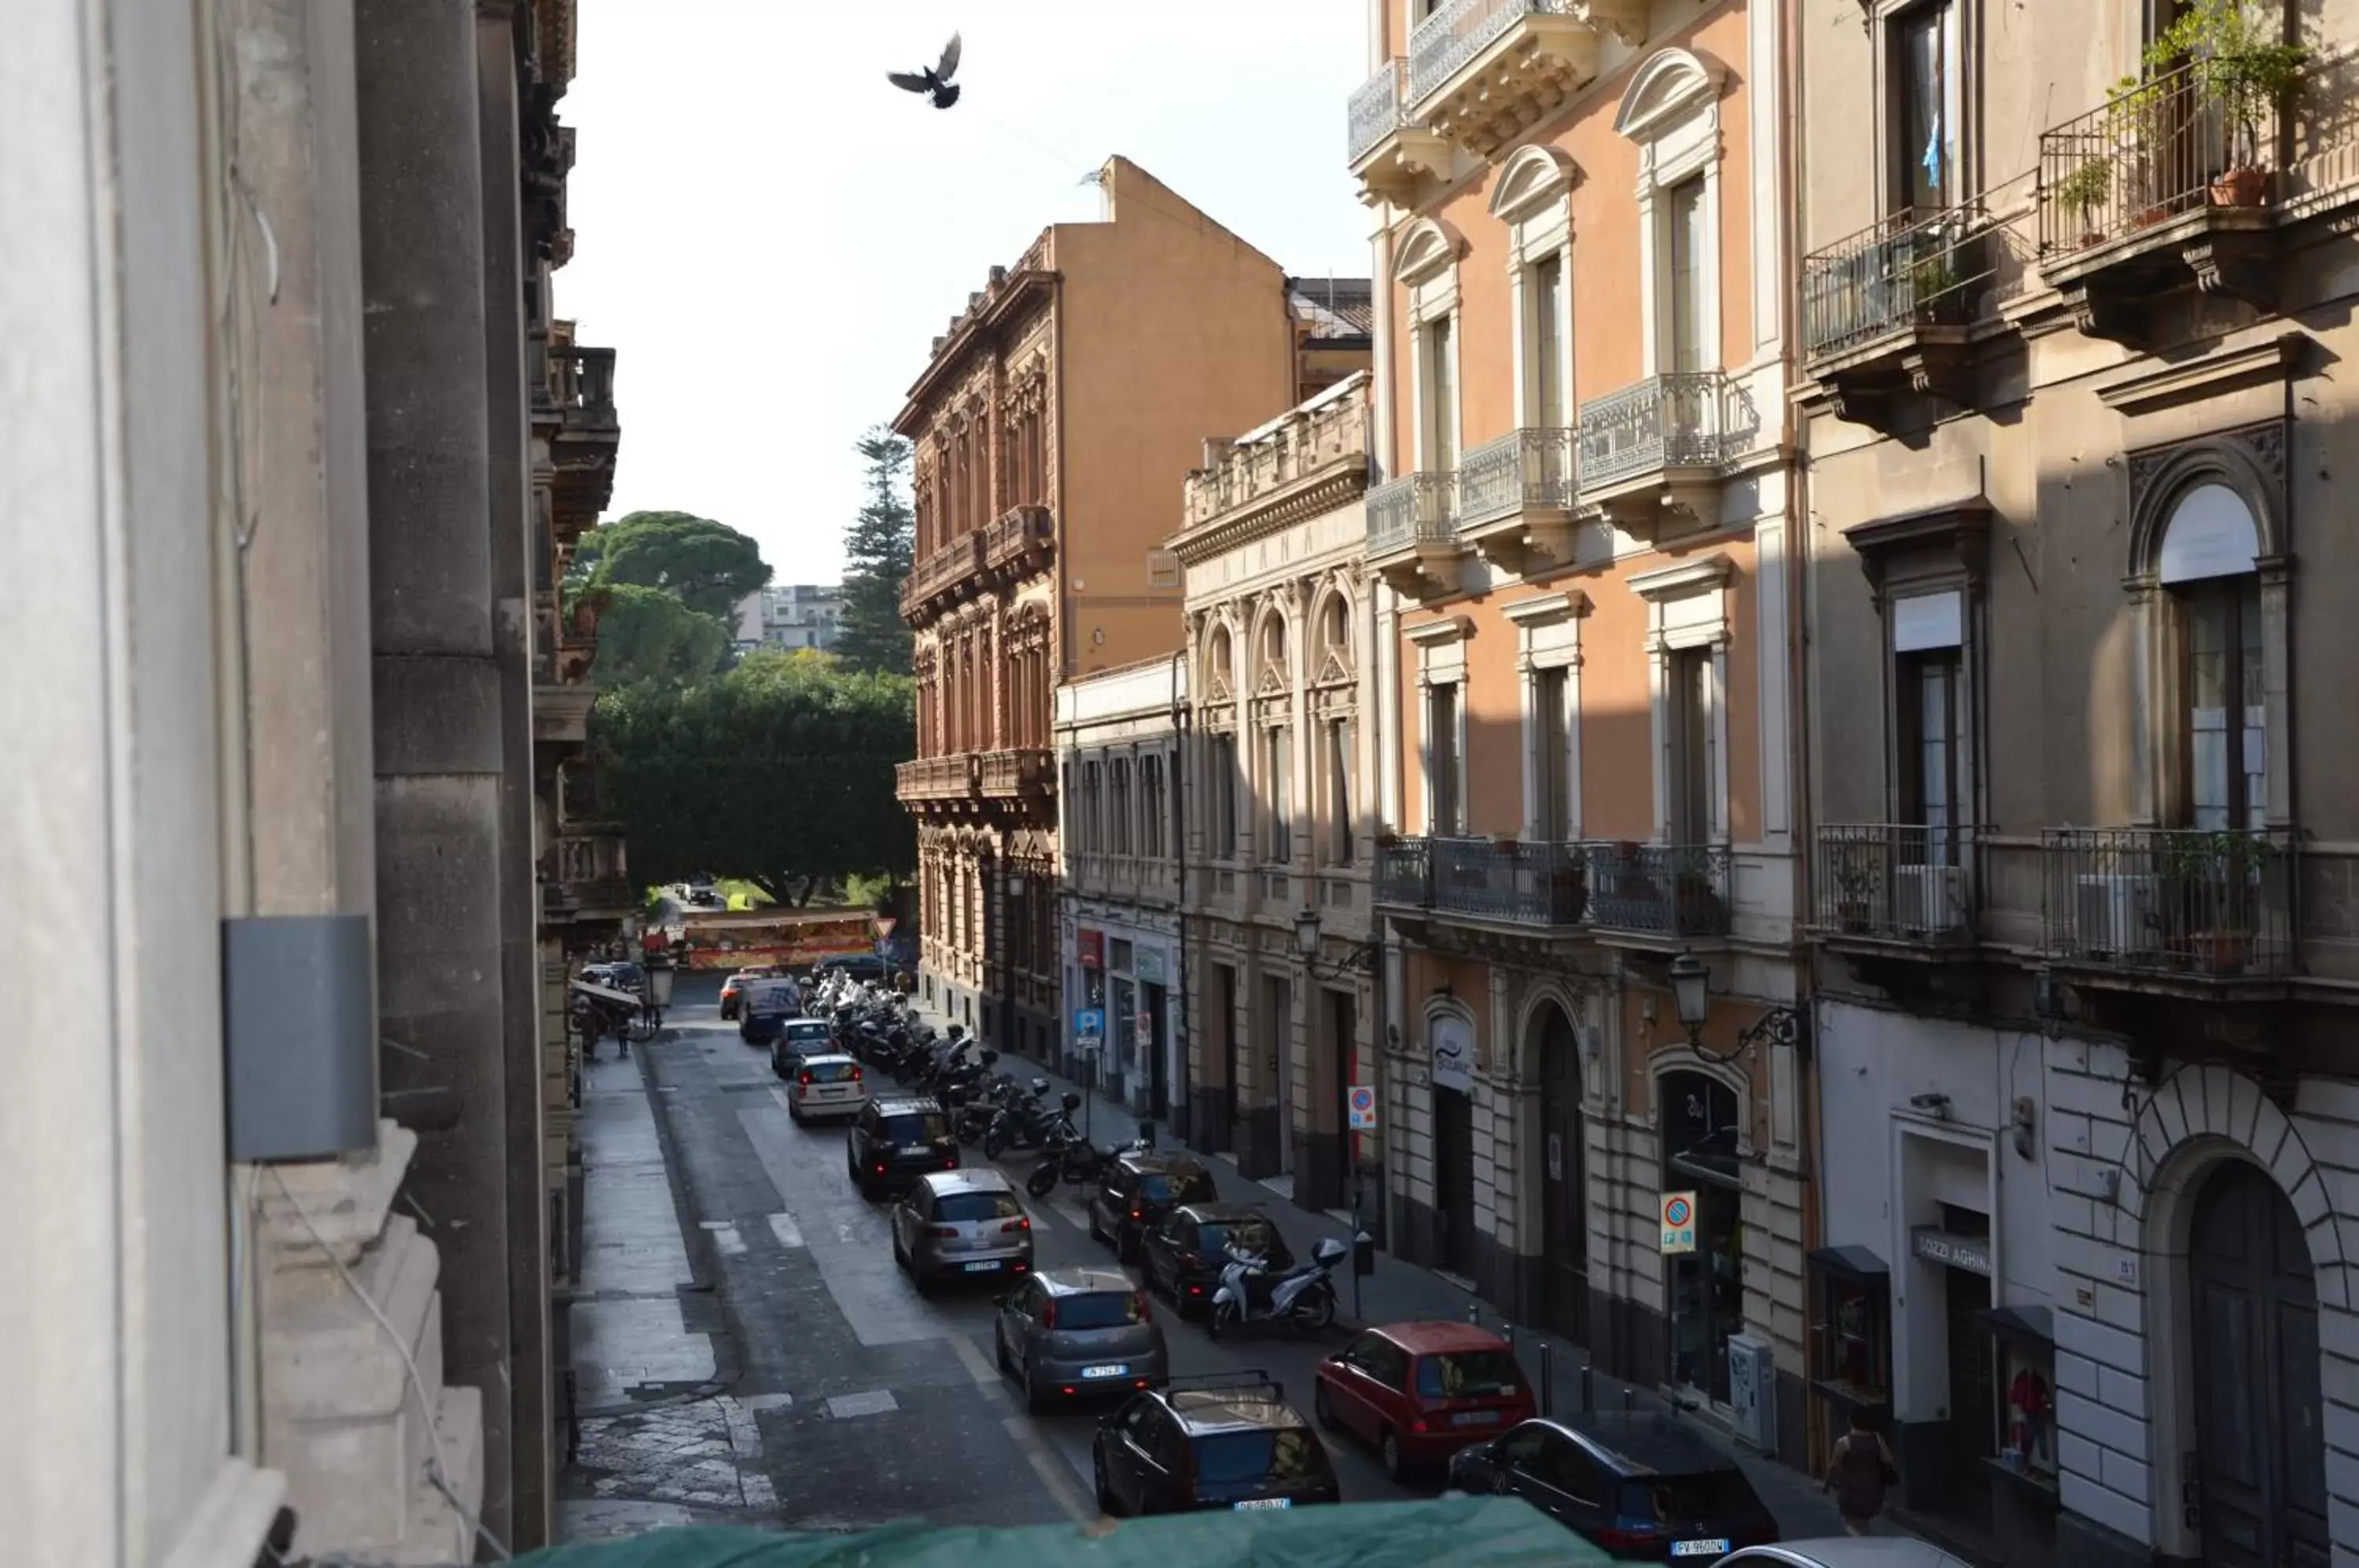 City view in B&B Giardino Bellini-centro